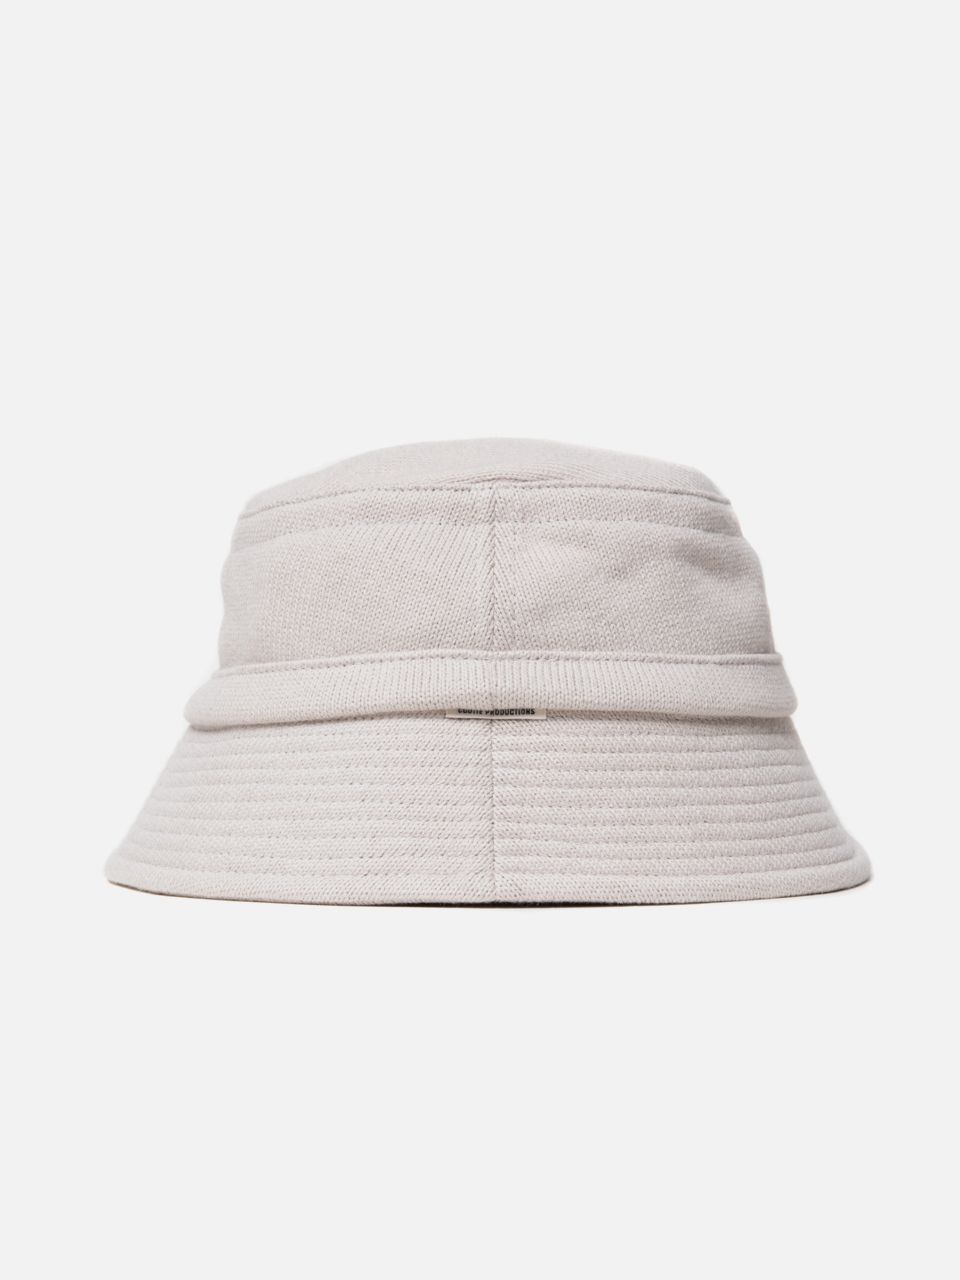 COOTIE / Knit Bucket Hat